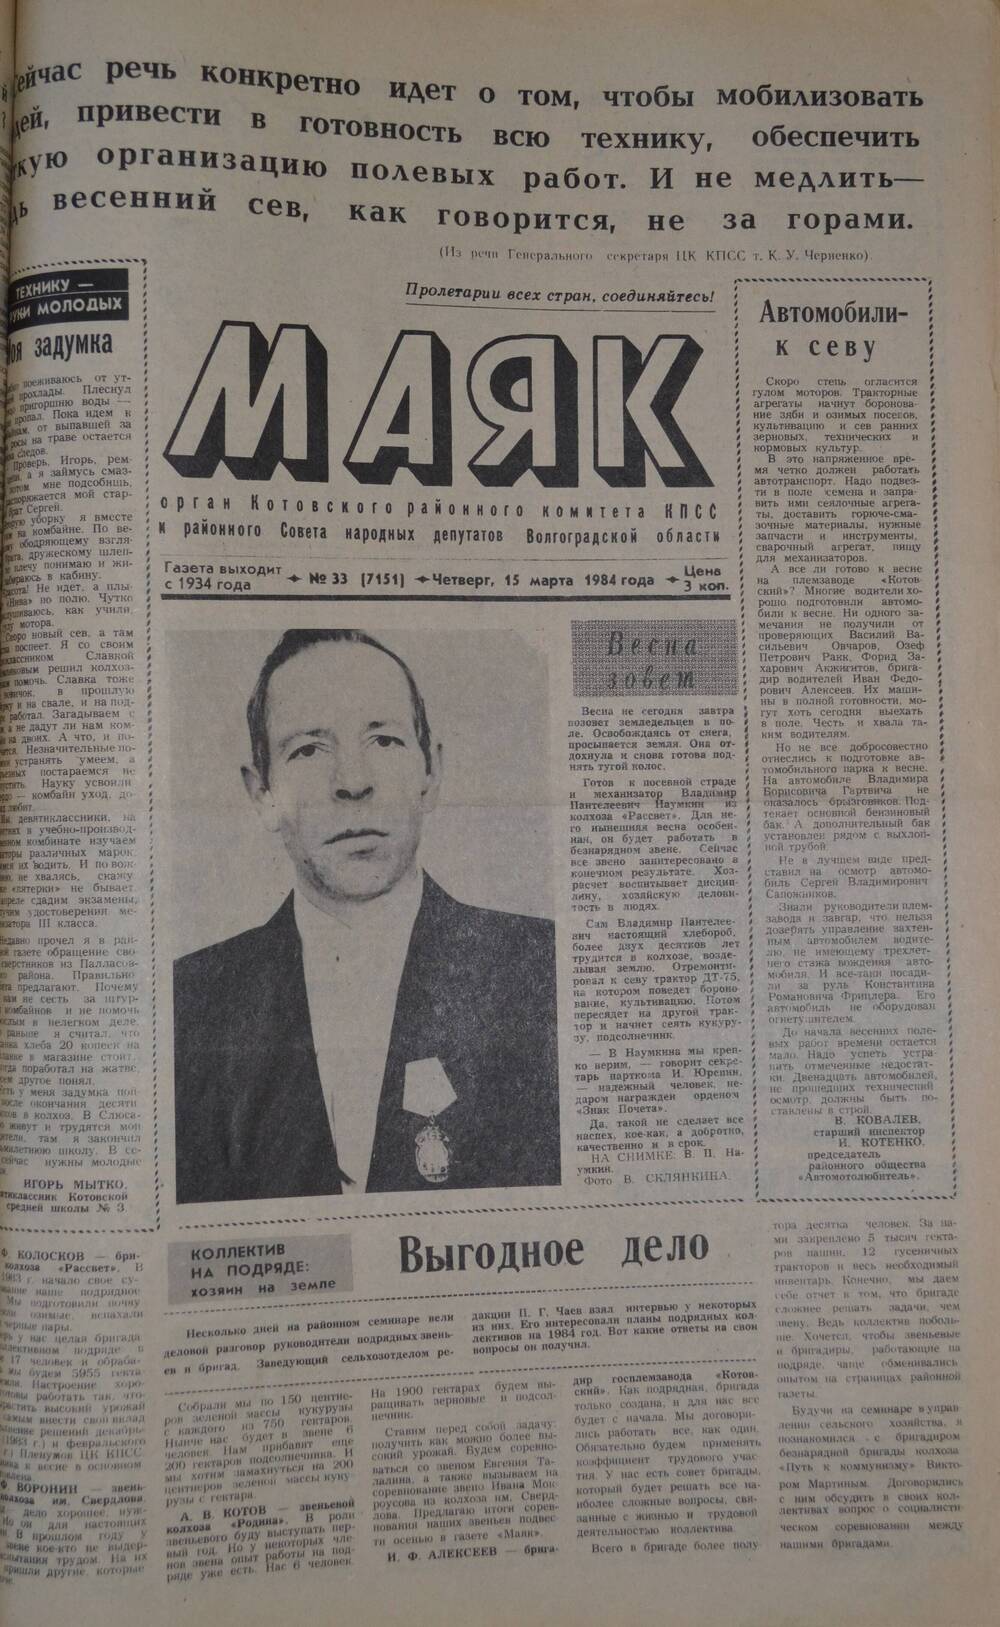 Газета Маяк № 33 (7151). Четверг, 15 марта 1984 года.